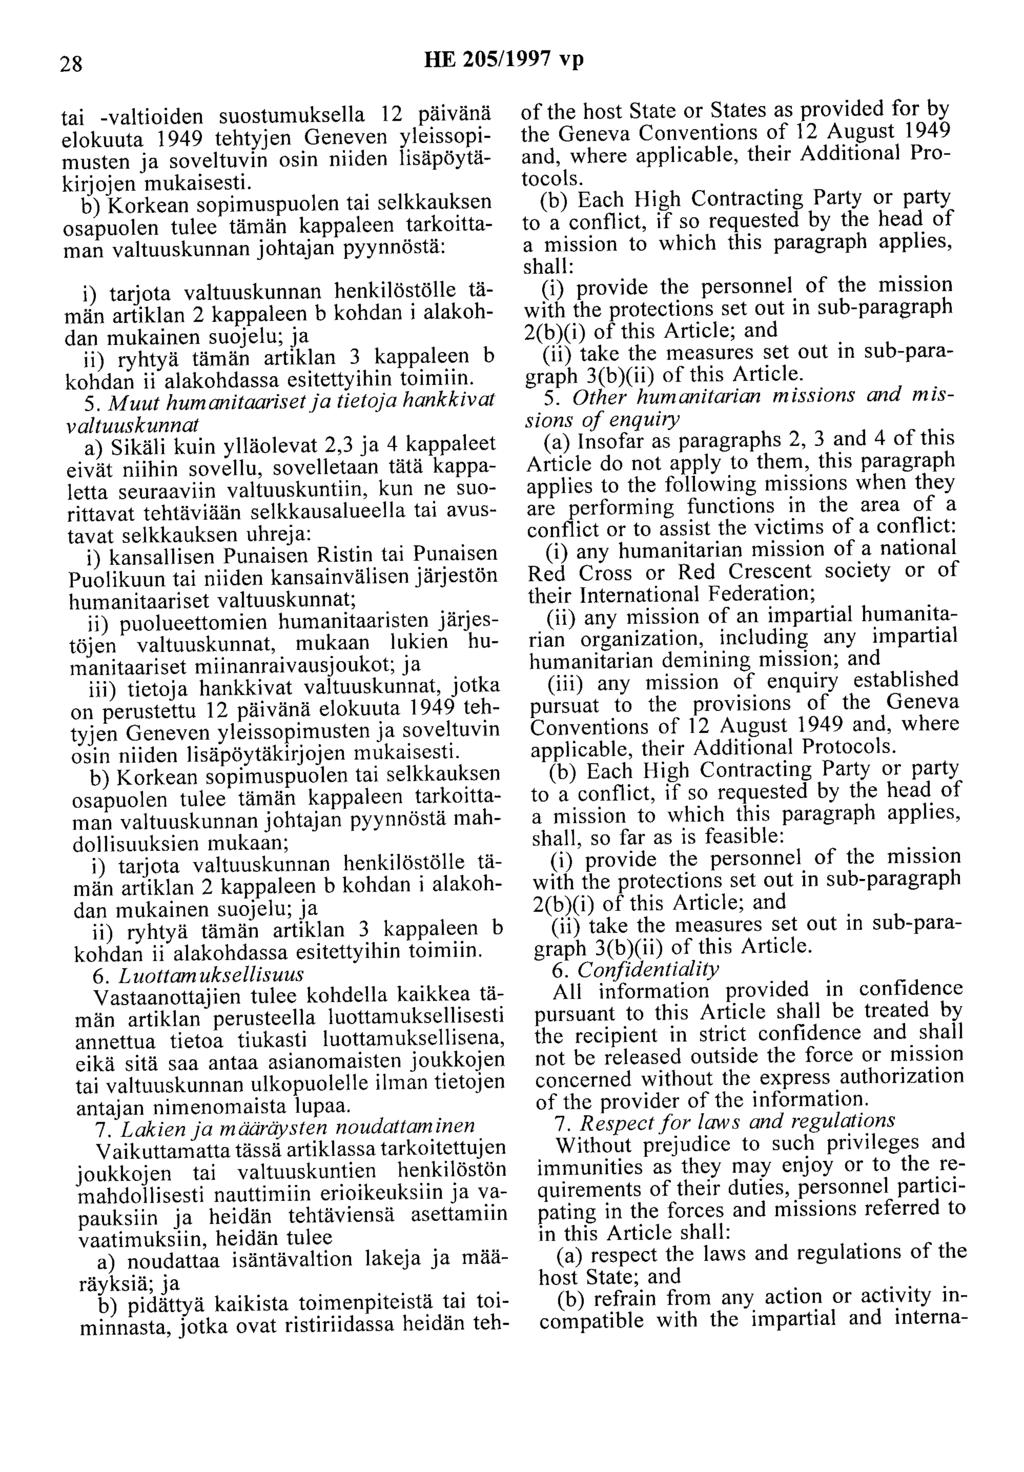 28 HE 205/1997 vp tai -valtioiden suostumuksella 12 pa1vana elokuuta 1949 tehtyjen Geneven yleissopimusten ja soveltuvin osin niiden lisäpöytäkirjojen mukaisesti.